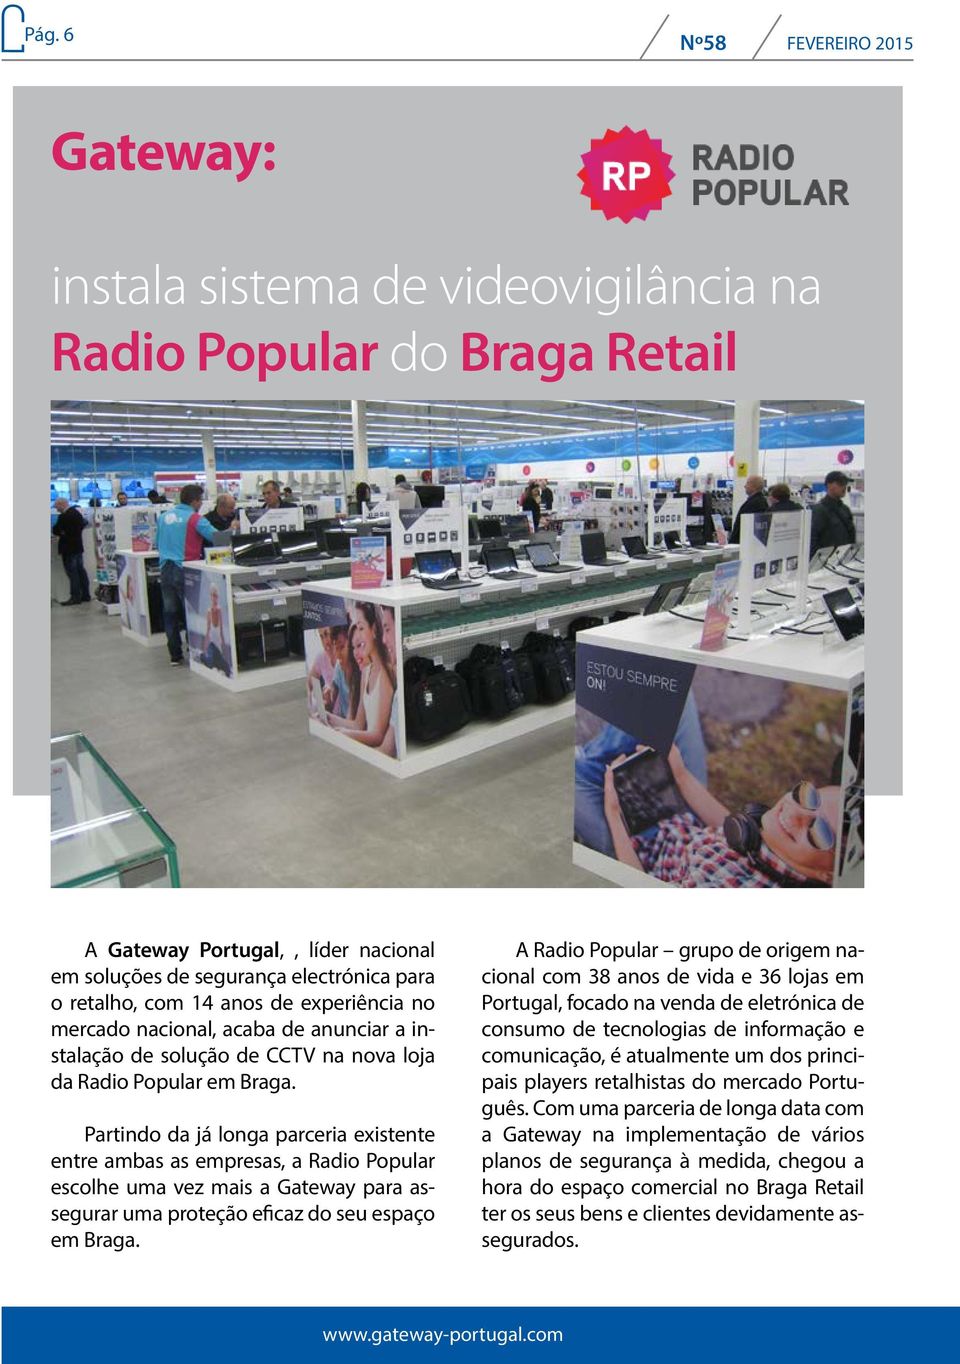 Partindo da já longa parceria existente entre ambas as empresas, a Radio Popular escolhe uma vez mais a Gateway para assegurar uma proteção eficaz do seu espaço em Braga.